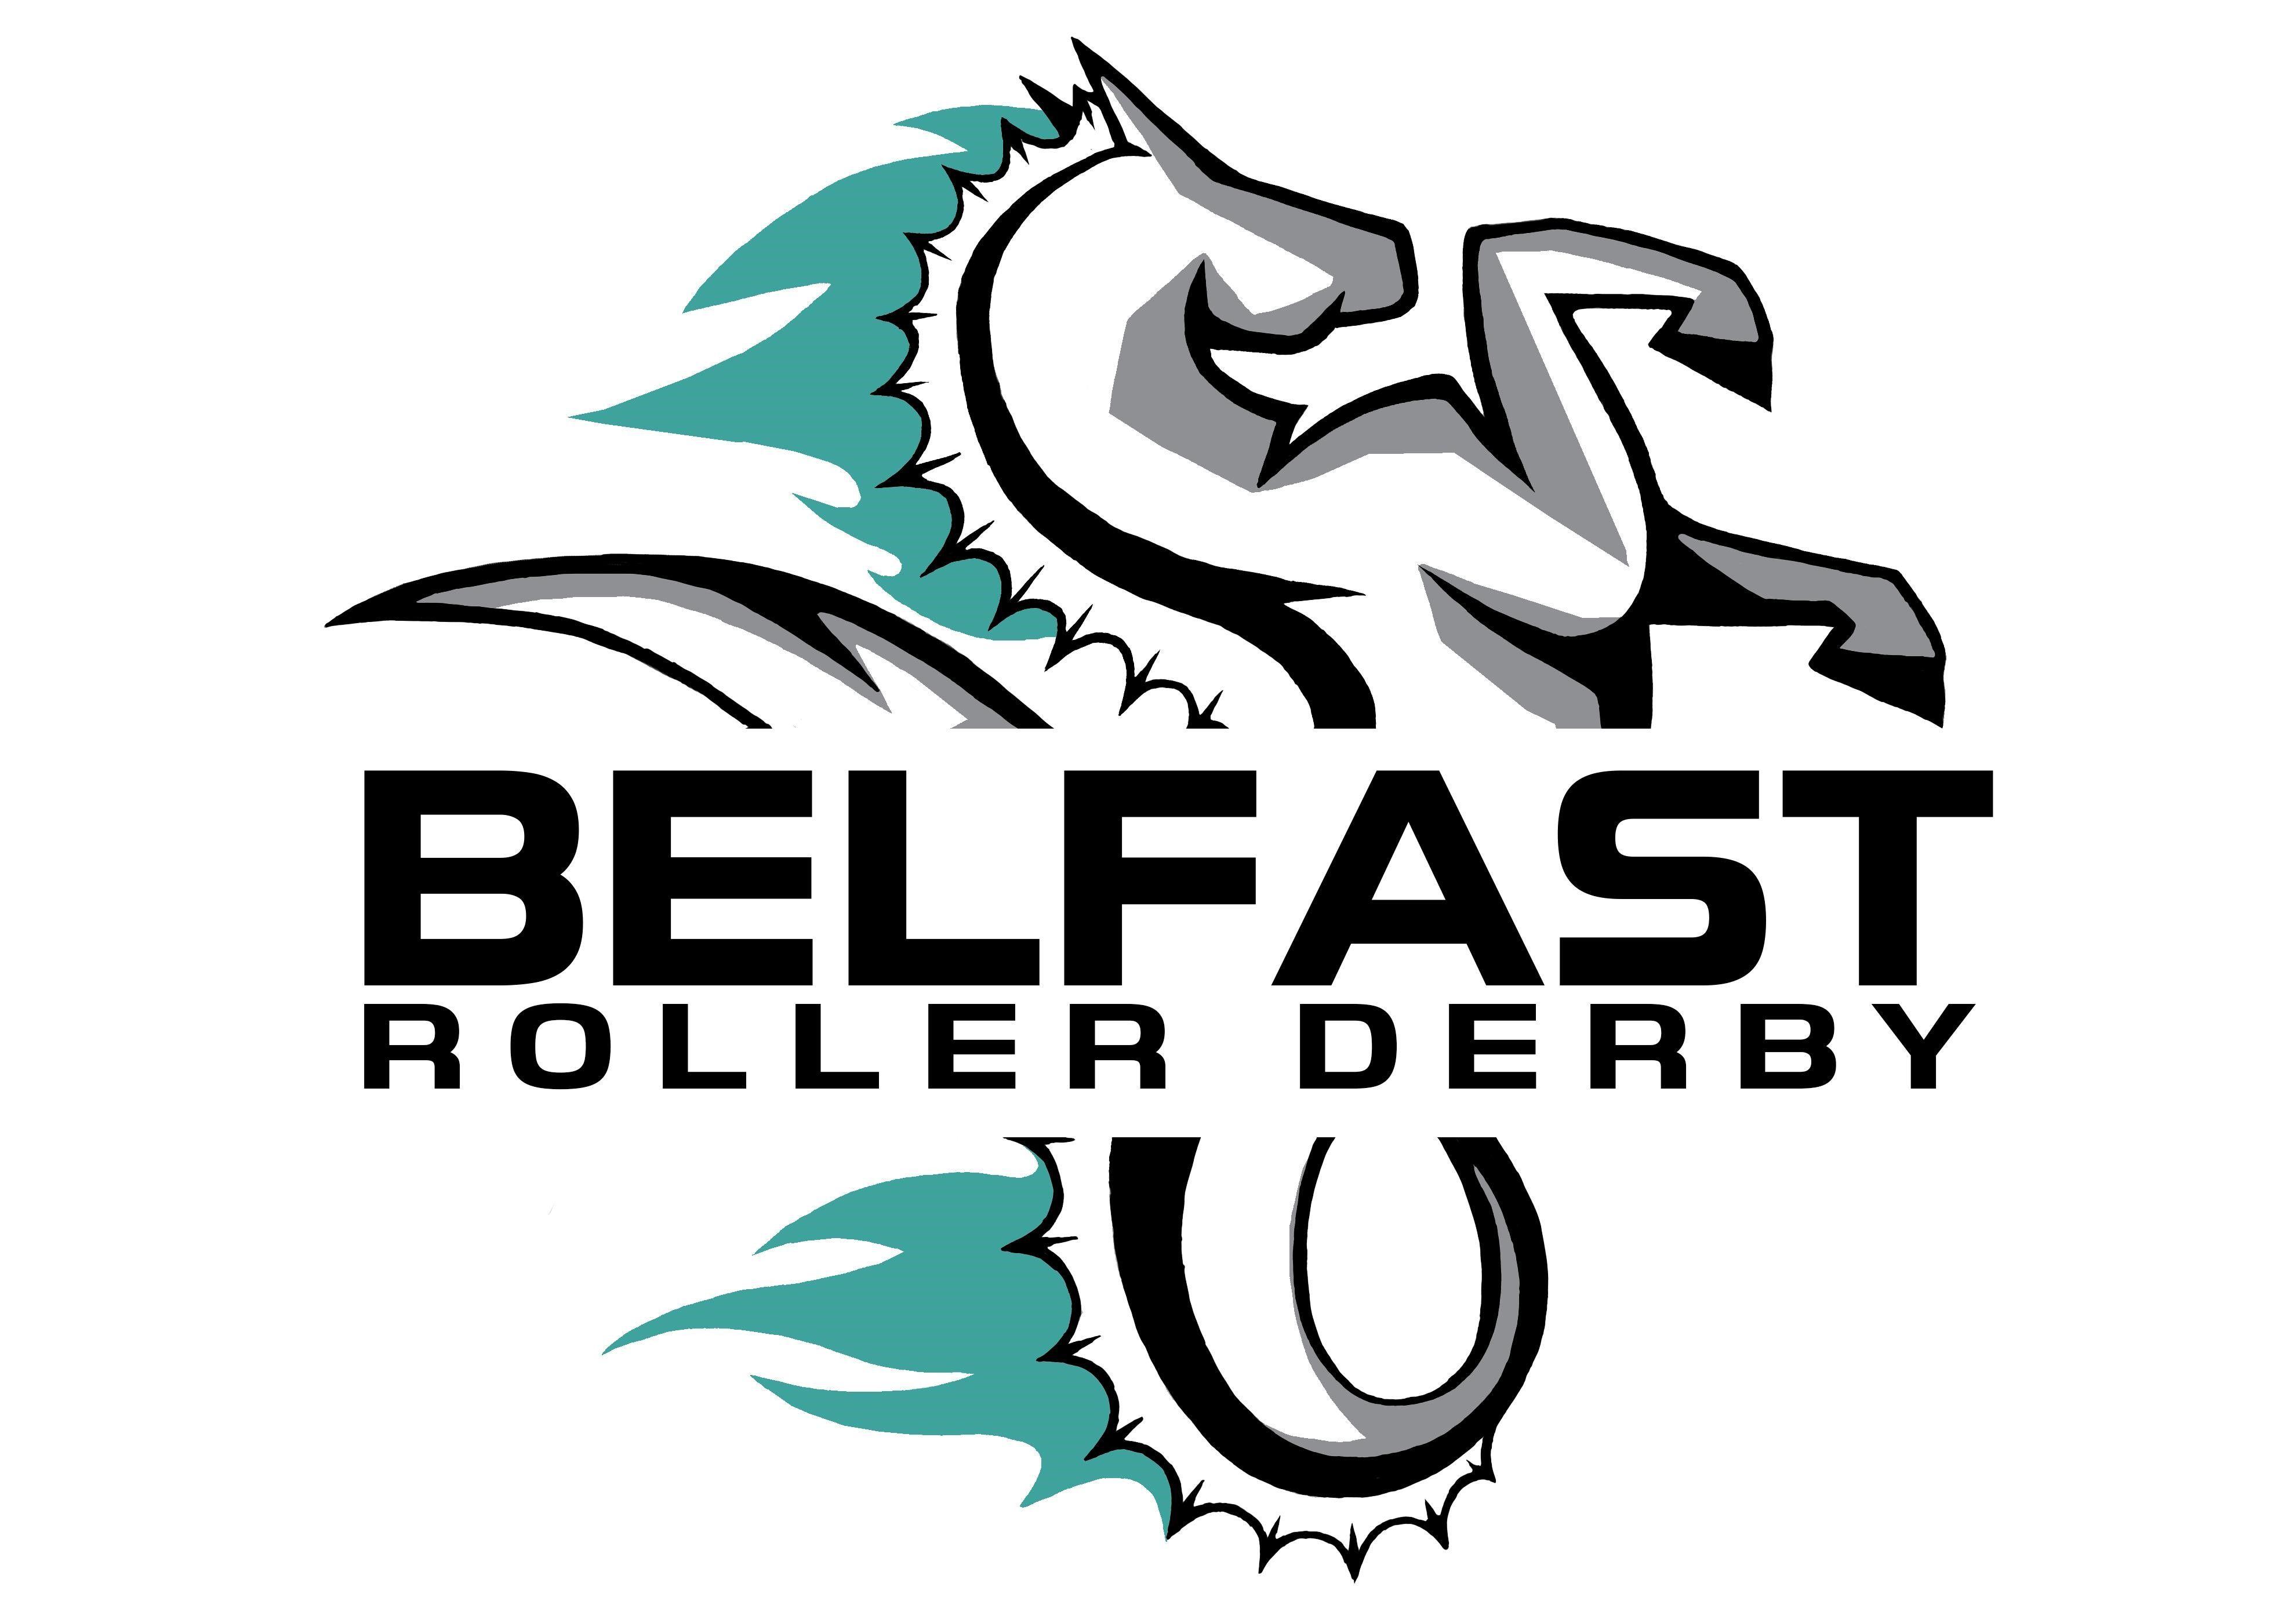 Derby Logo - Belfast Roller Derby